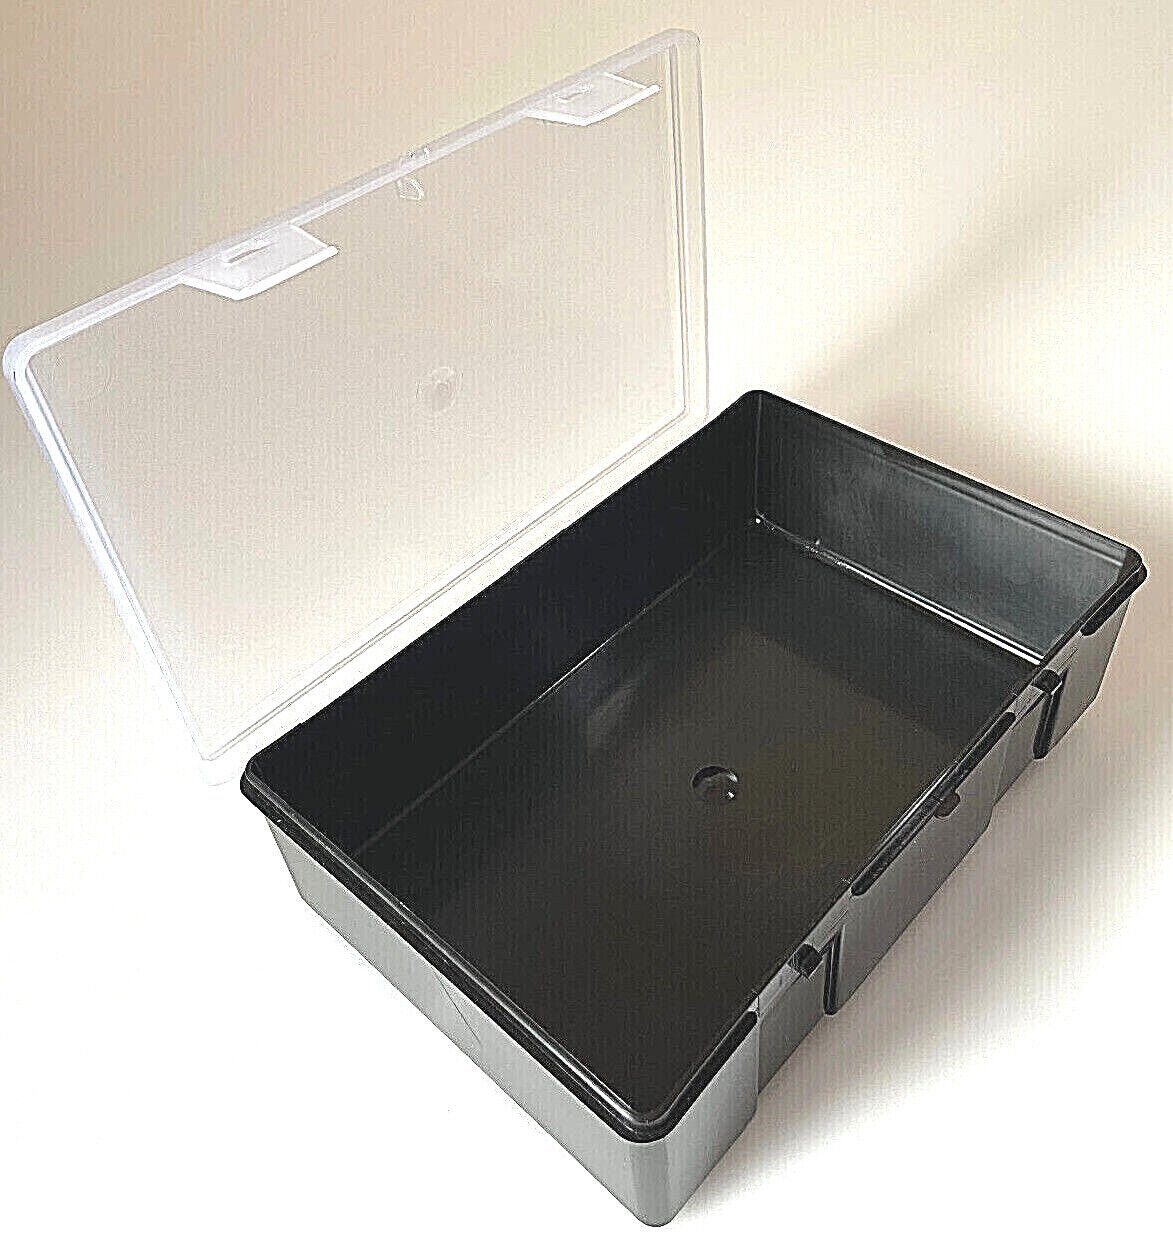 Anplast Behälter weiß Tackle Medizinbox 2,5L - Karpfenbox Angelkoffer MaXi BoX Angelkiste